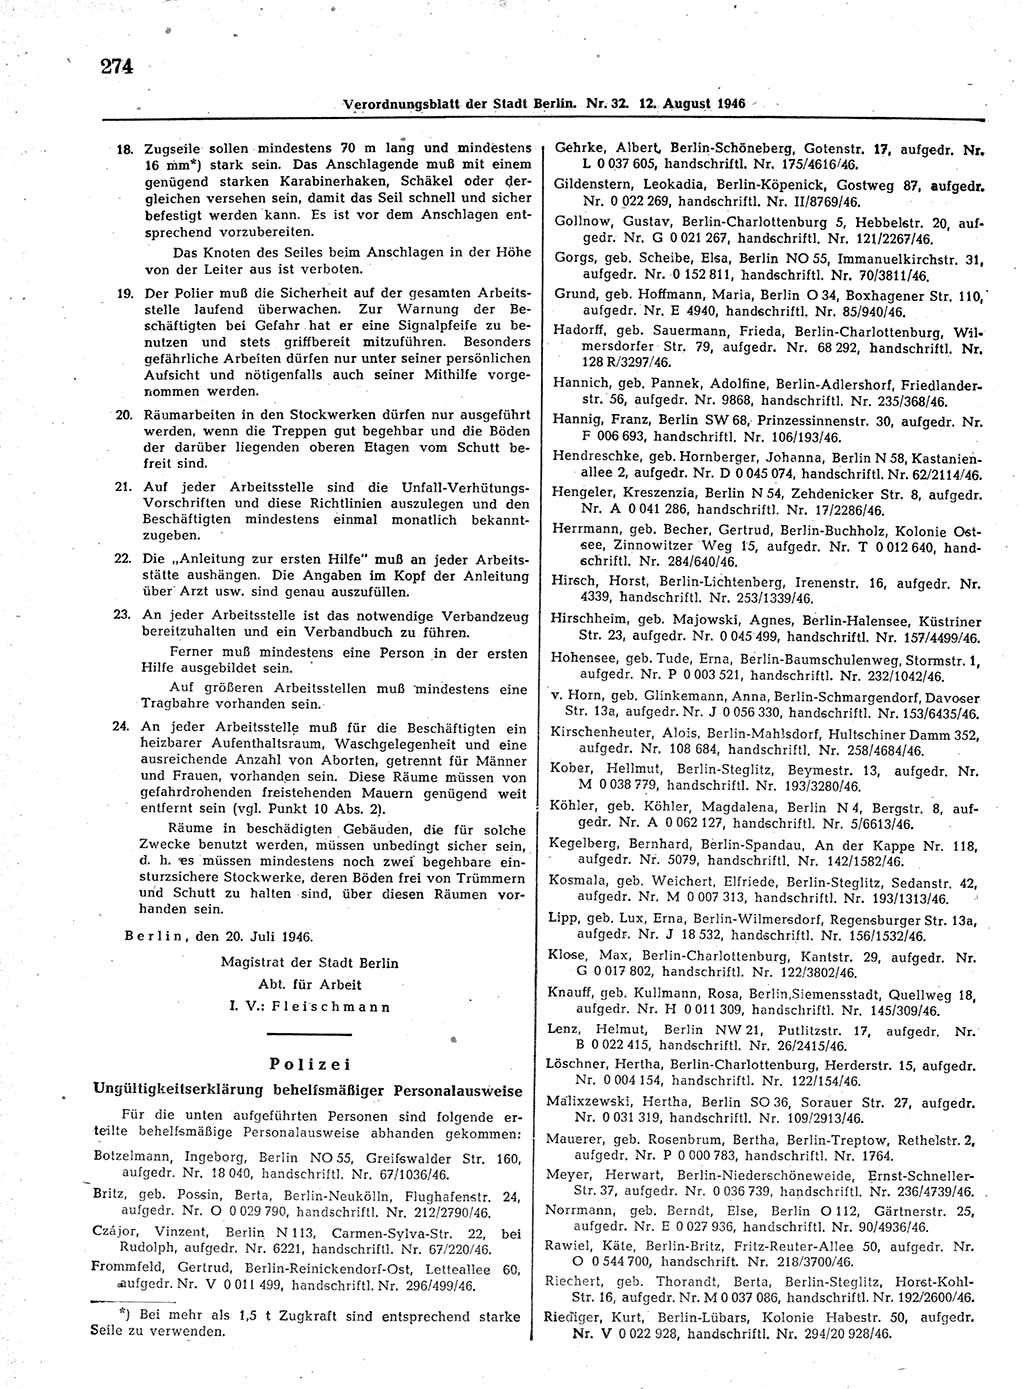 Verordnungsblatt (VOBl.) der Stadt Berlin, für Groß-Berlin 1946, Seite 274 (VOBl. Bln. 1946, S. 274)